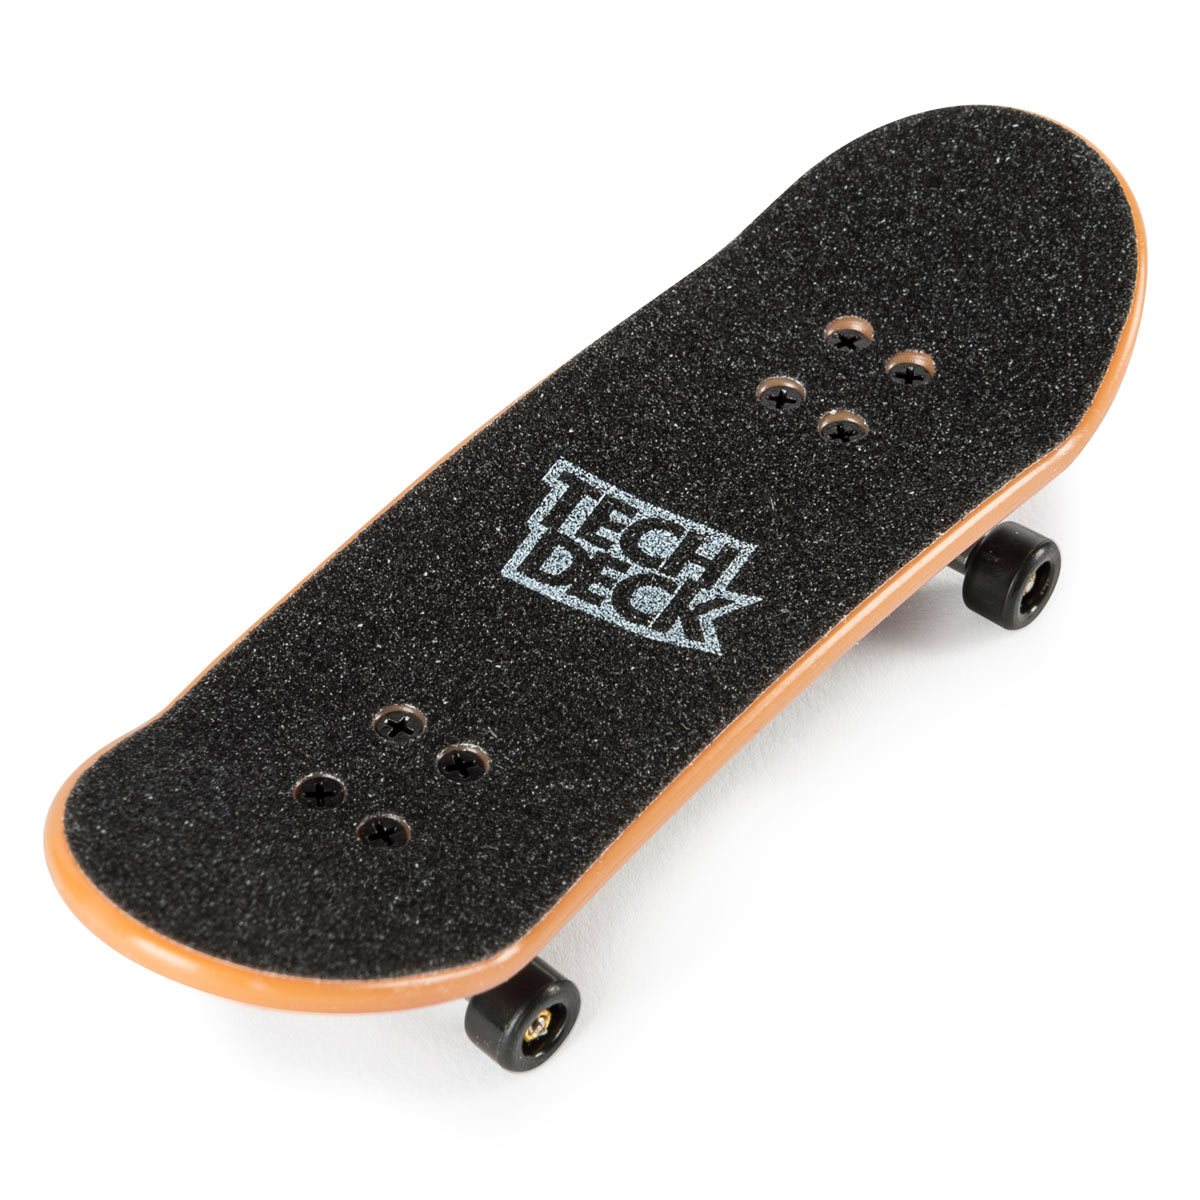 Tech Deck Mini Skateboard Rock The Baby Miniature Fingerboard 3.75